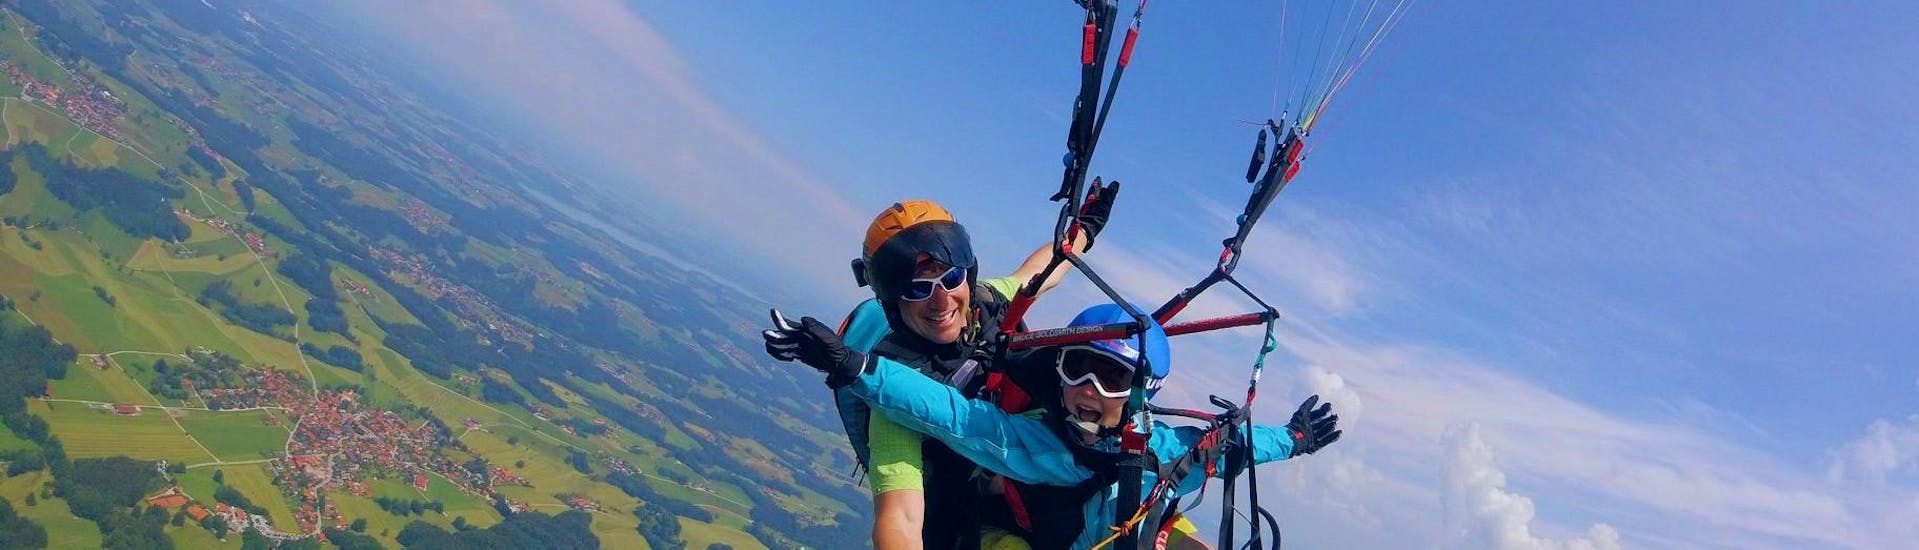 Tandem Paragliding Thermikflug Plus über den Chiemsee oder Kössen.